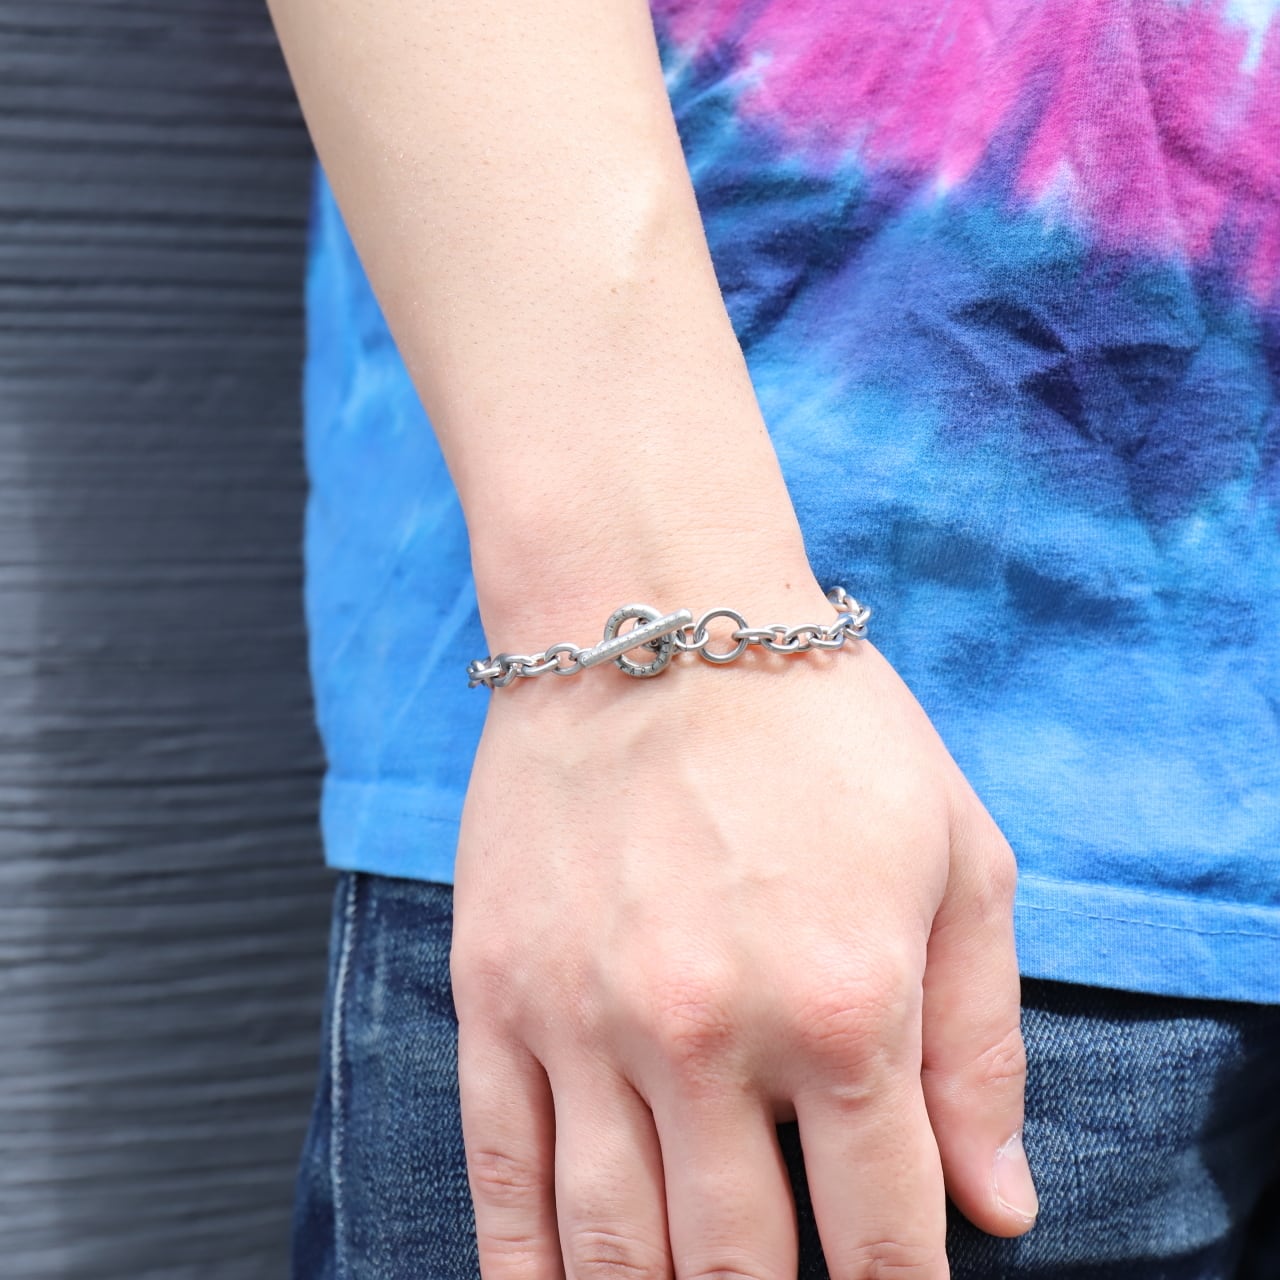 ◇錫 (スズ) × silver ブレスレット【 ID Chain Bracelet -AZUKI